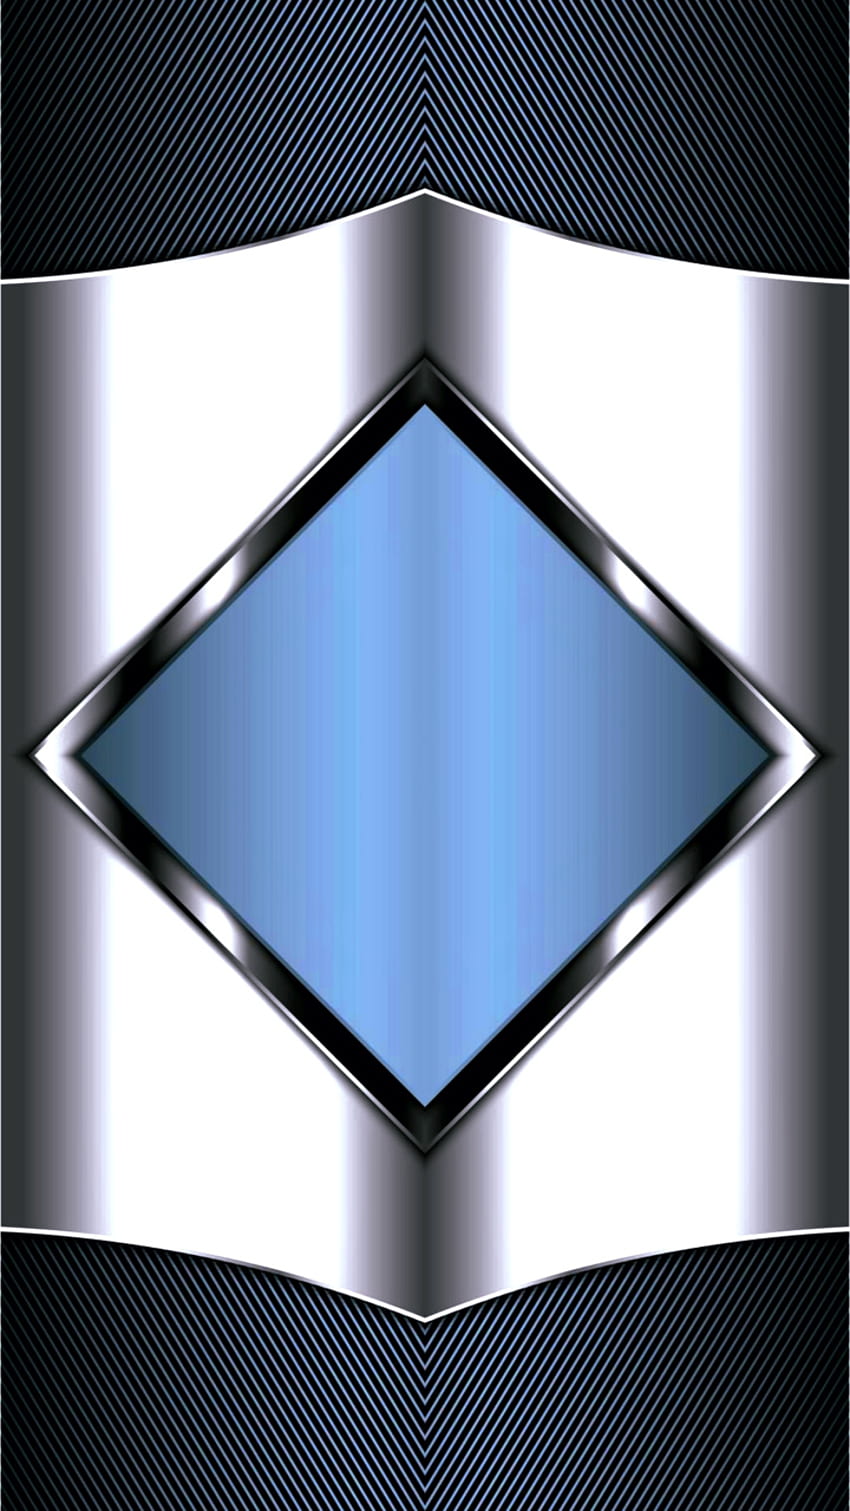 シルバー ブルー ジオメトリック、シンボル、ダイヤモンド、素材、モダン、対称性、デザイン、パターン、光沢のある、抽象、三角形 HD電話の壁紙